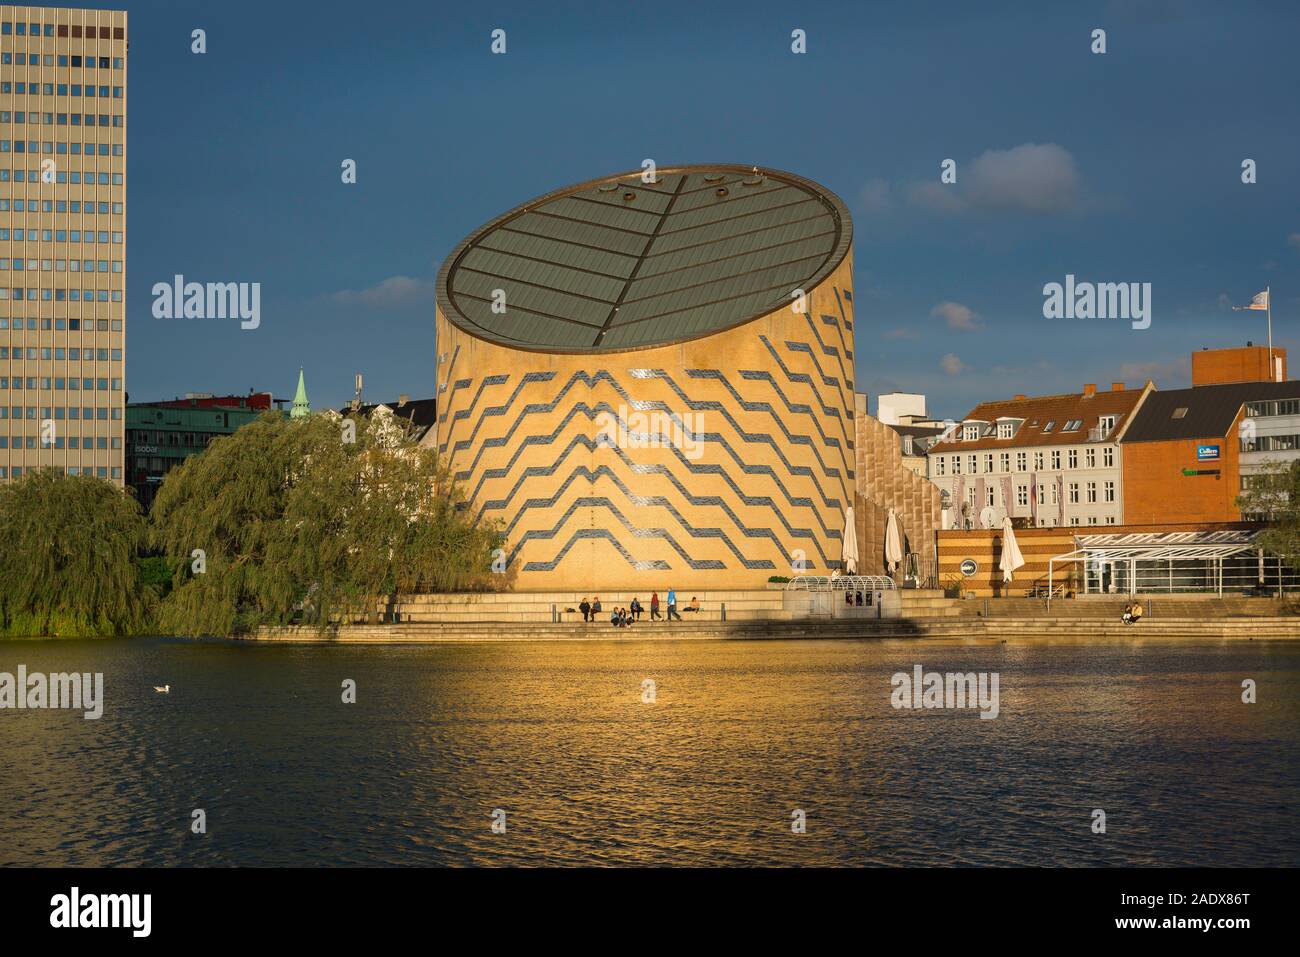 Planétarium de Copenhague, vue du Planétarium Tycho Brahe (1989) situé à côté du lac Sankt Jørgens Sø, dans le centre de Copenhague, Danemark. Banque D'Images